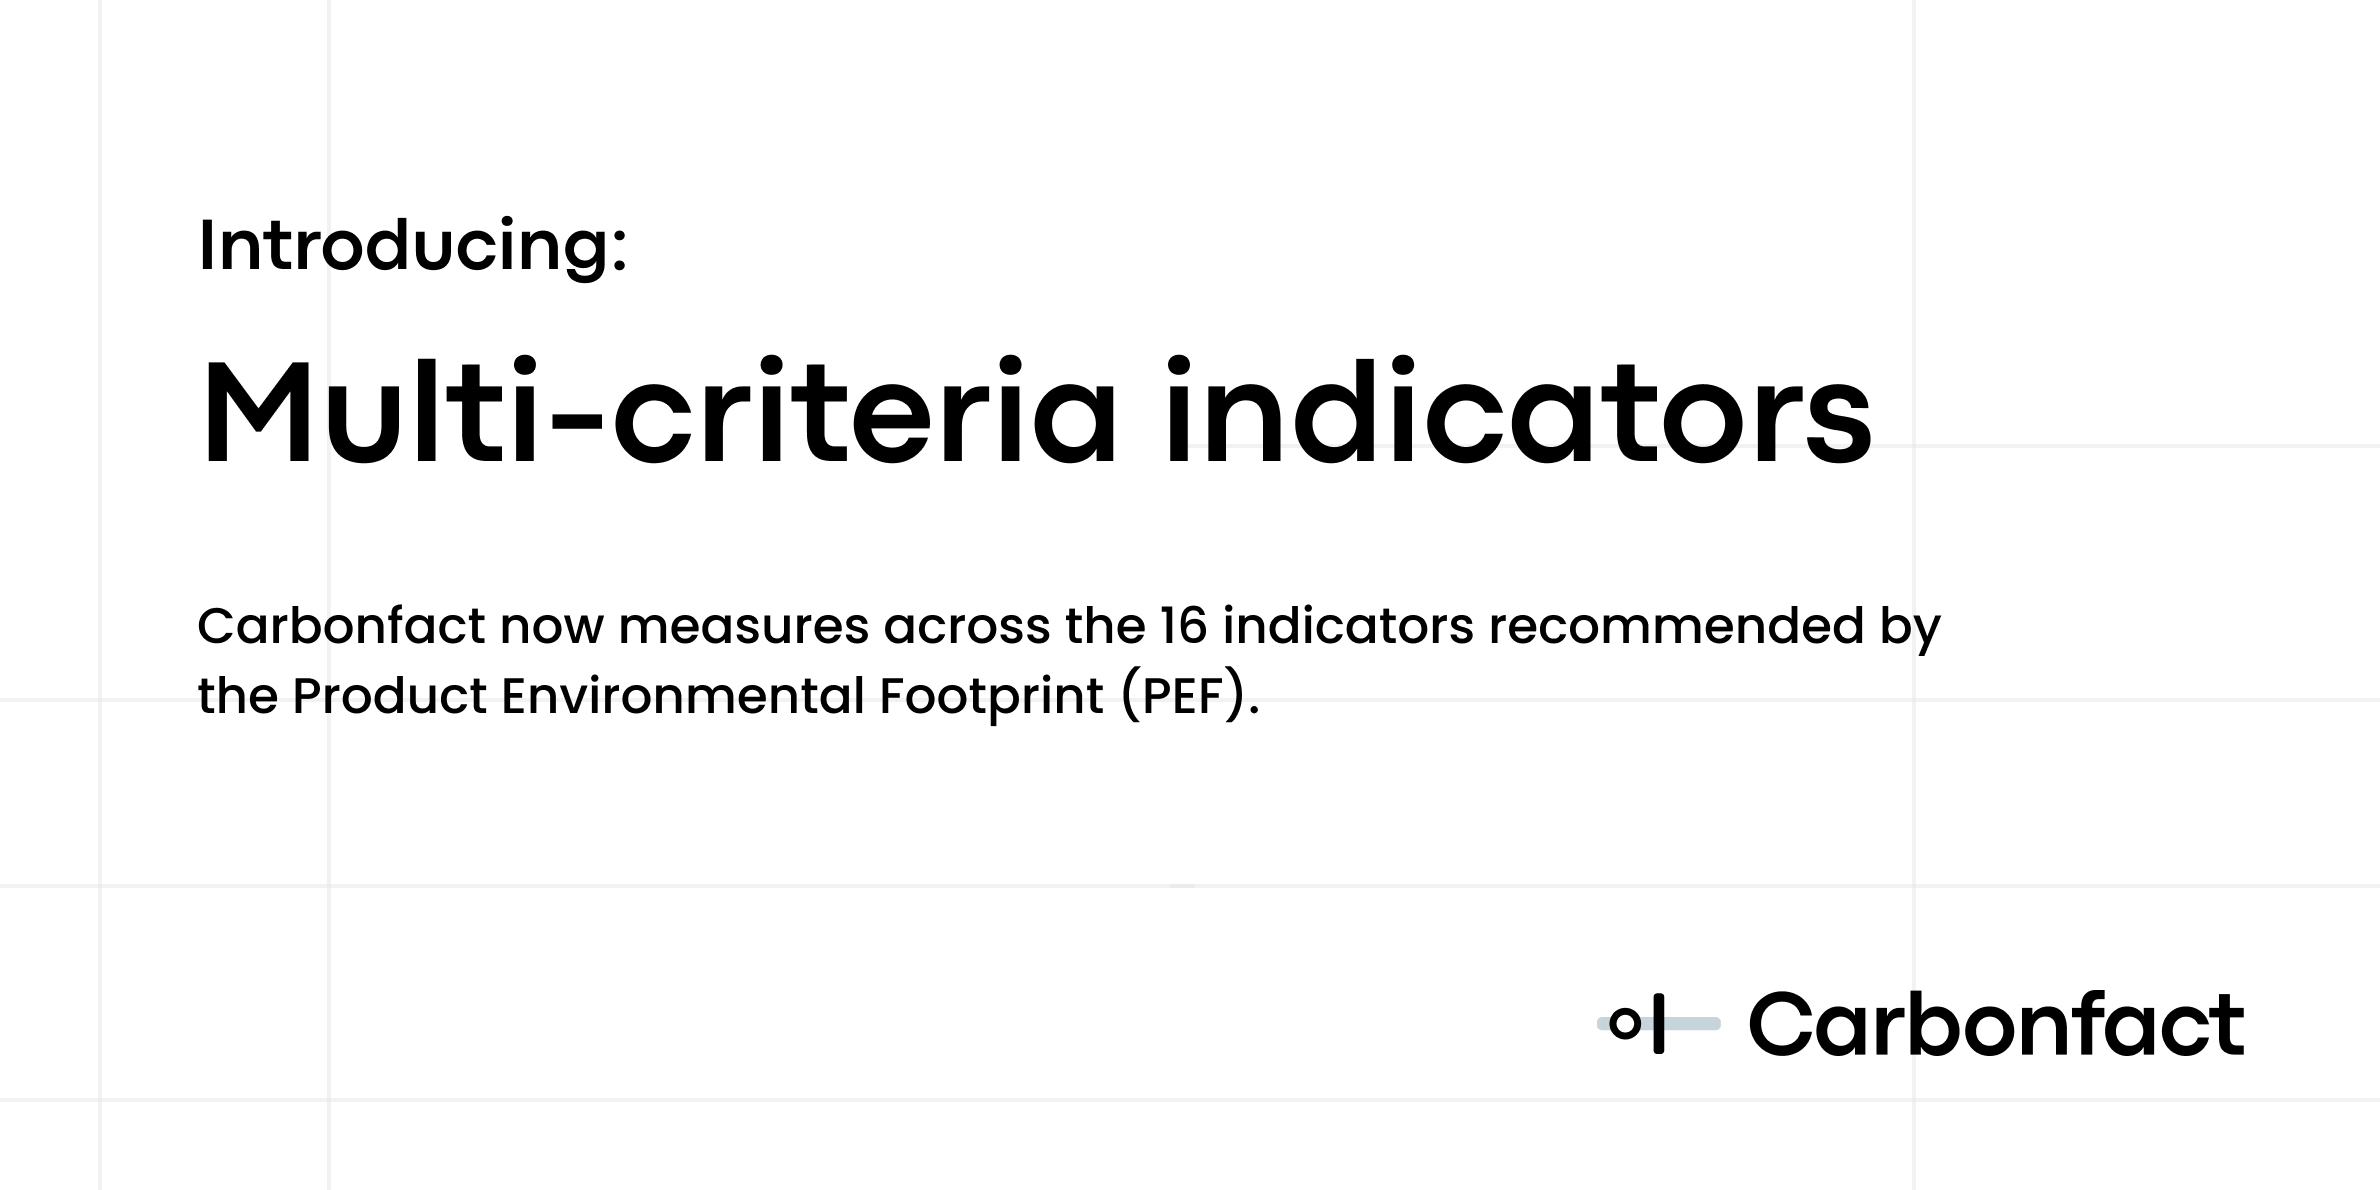 Multi-criteria indicators